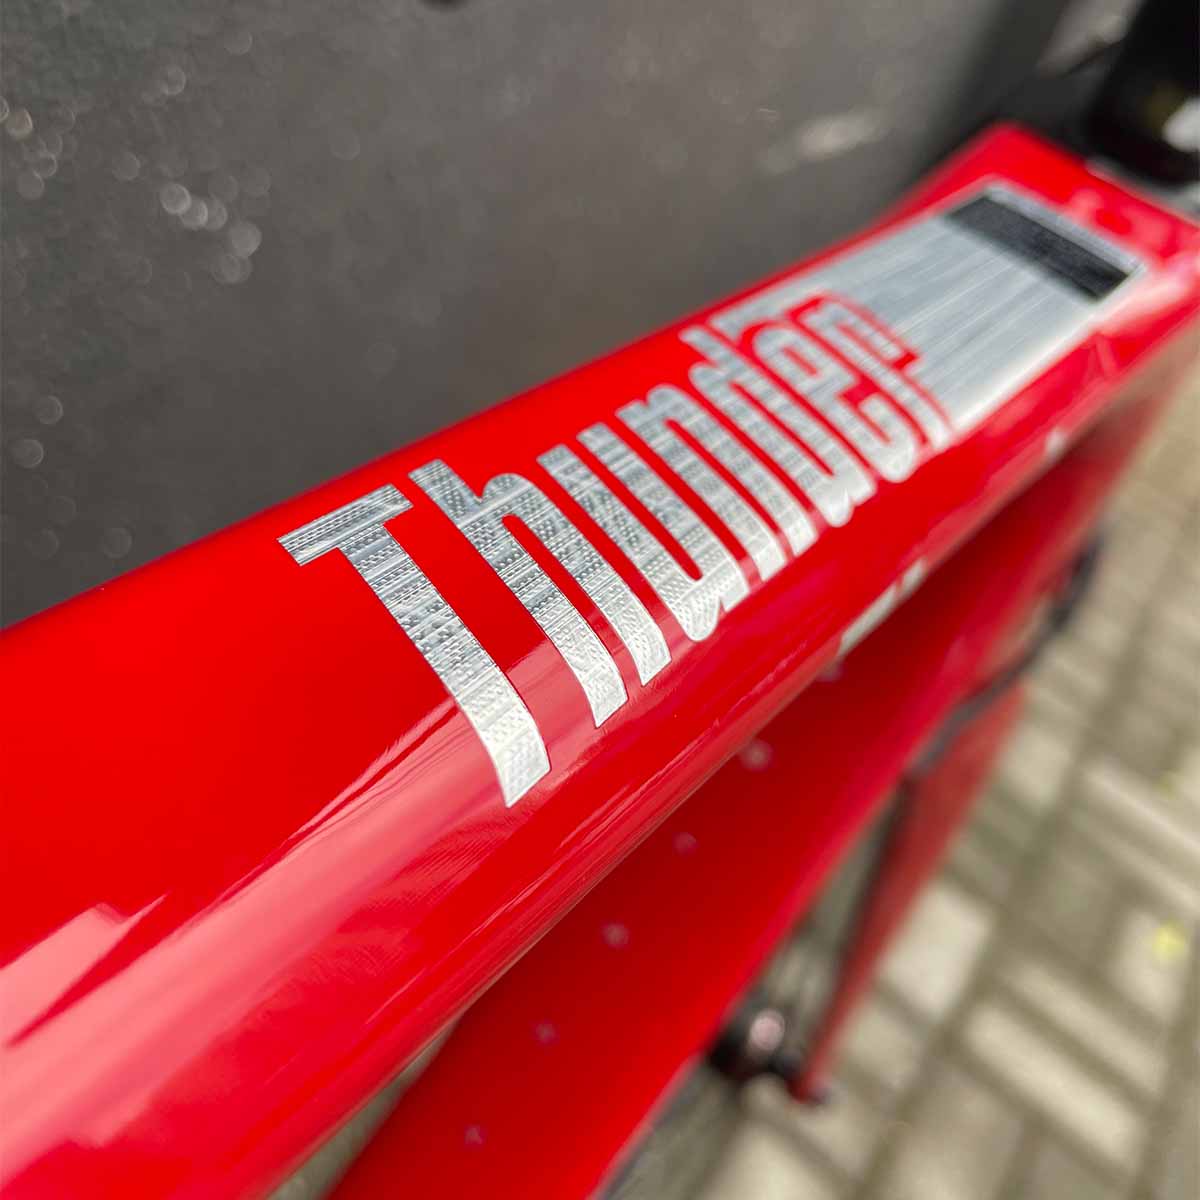 Bicicleta Twitter Thunder Disc Speed Carbono Shimano 105 22V Freio Disco Mecanico Vermelha